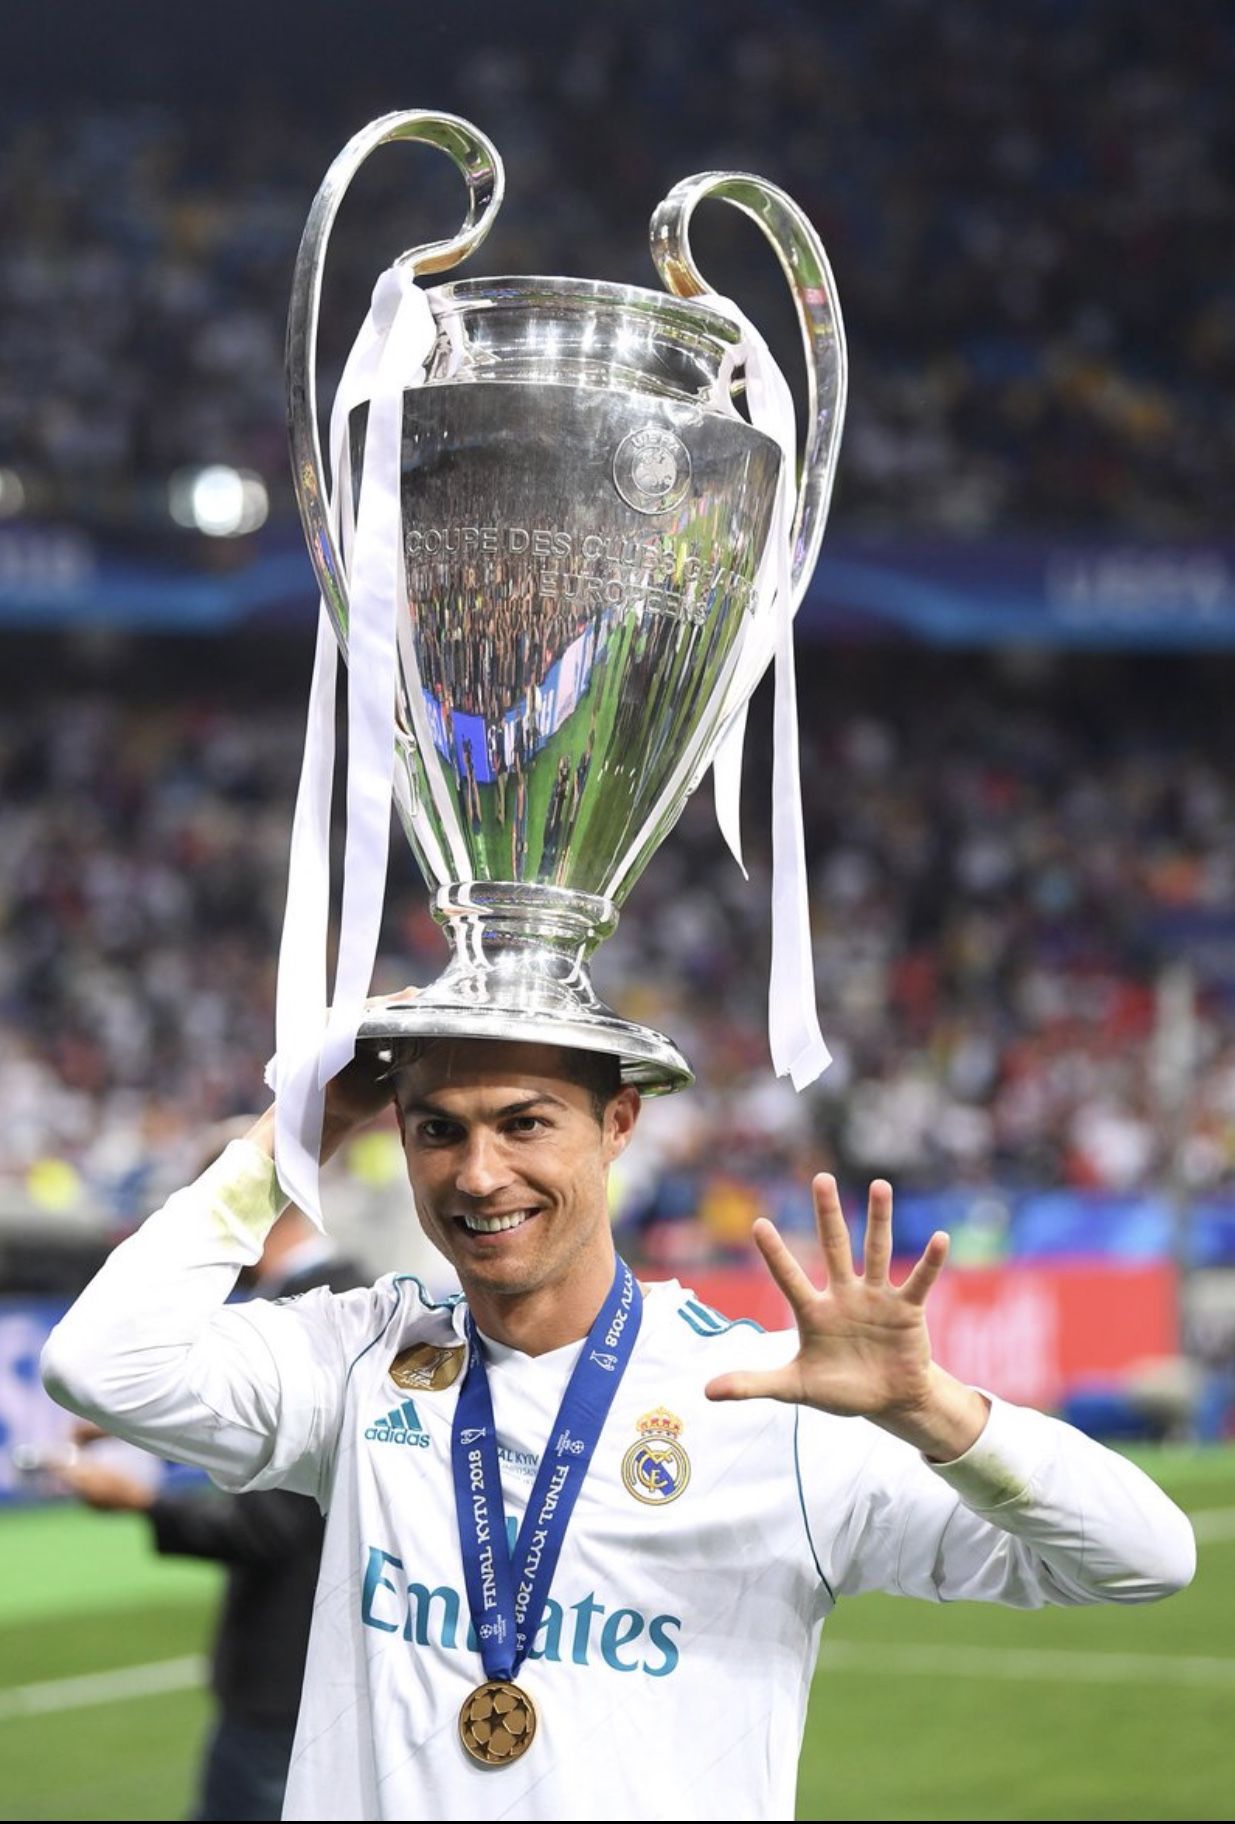 Khám phá bộ sưu tập ảnh Cristiano Ronaldo với chiếc cúp vô địch UEFA Champions League đầy ấn tượng và tràn đầy sức sống. Bộ ảnh nền này sẽ làm bạn cảm thấy như đang trực tiếp chứng kiến chàng cầu thủ tuyệt vời này đang khiến cả thế giới phải nể phục.